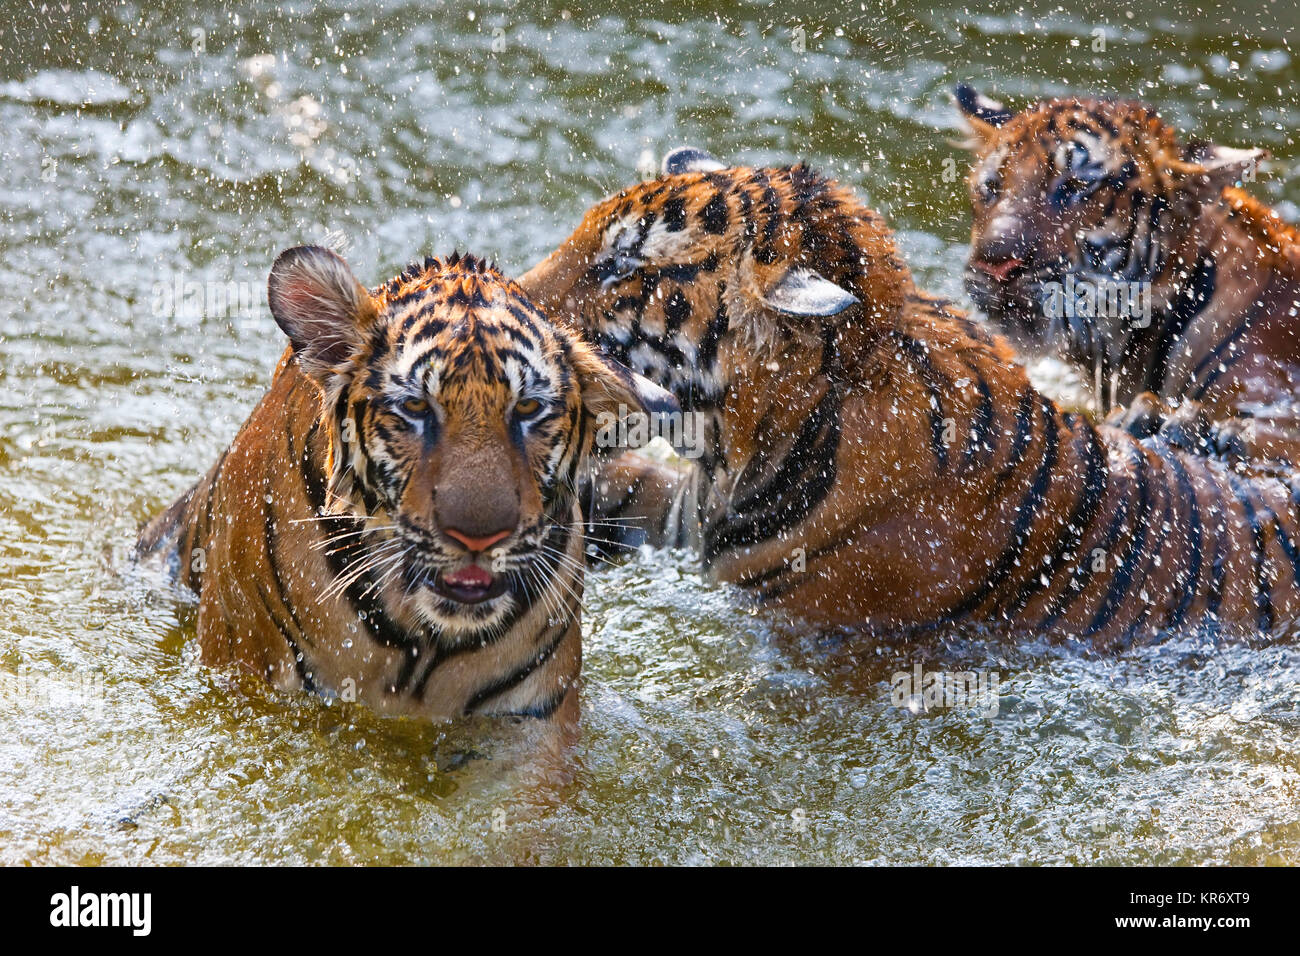 Angolo alto close up di tre tigri in piedi in un foro di irrigazione. Foto Stock